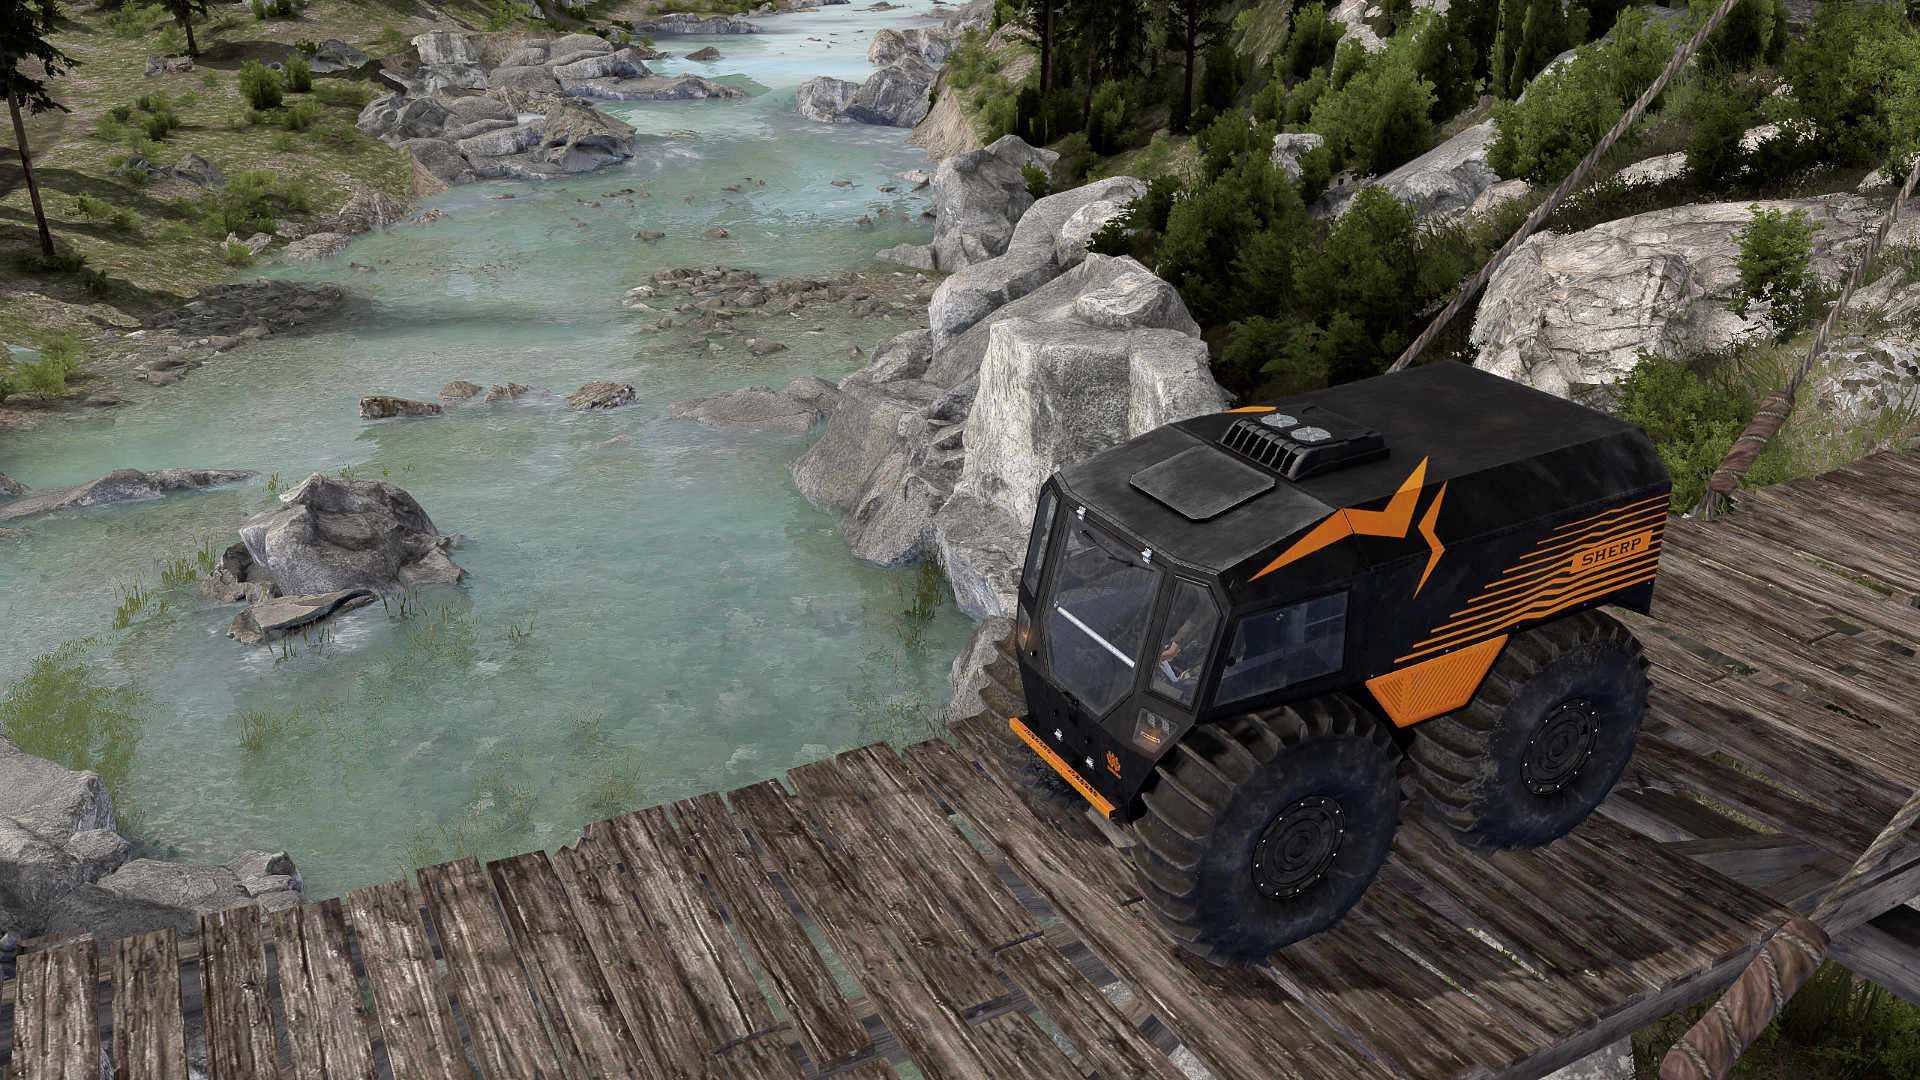 Spintires - SHERP Ural Challenge DLC screenshot